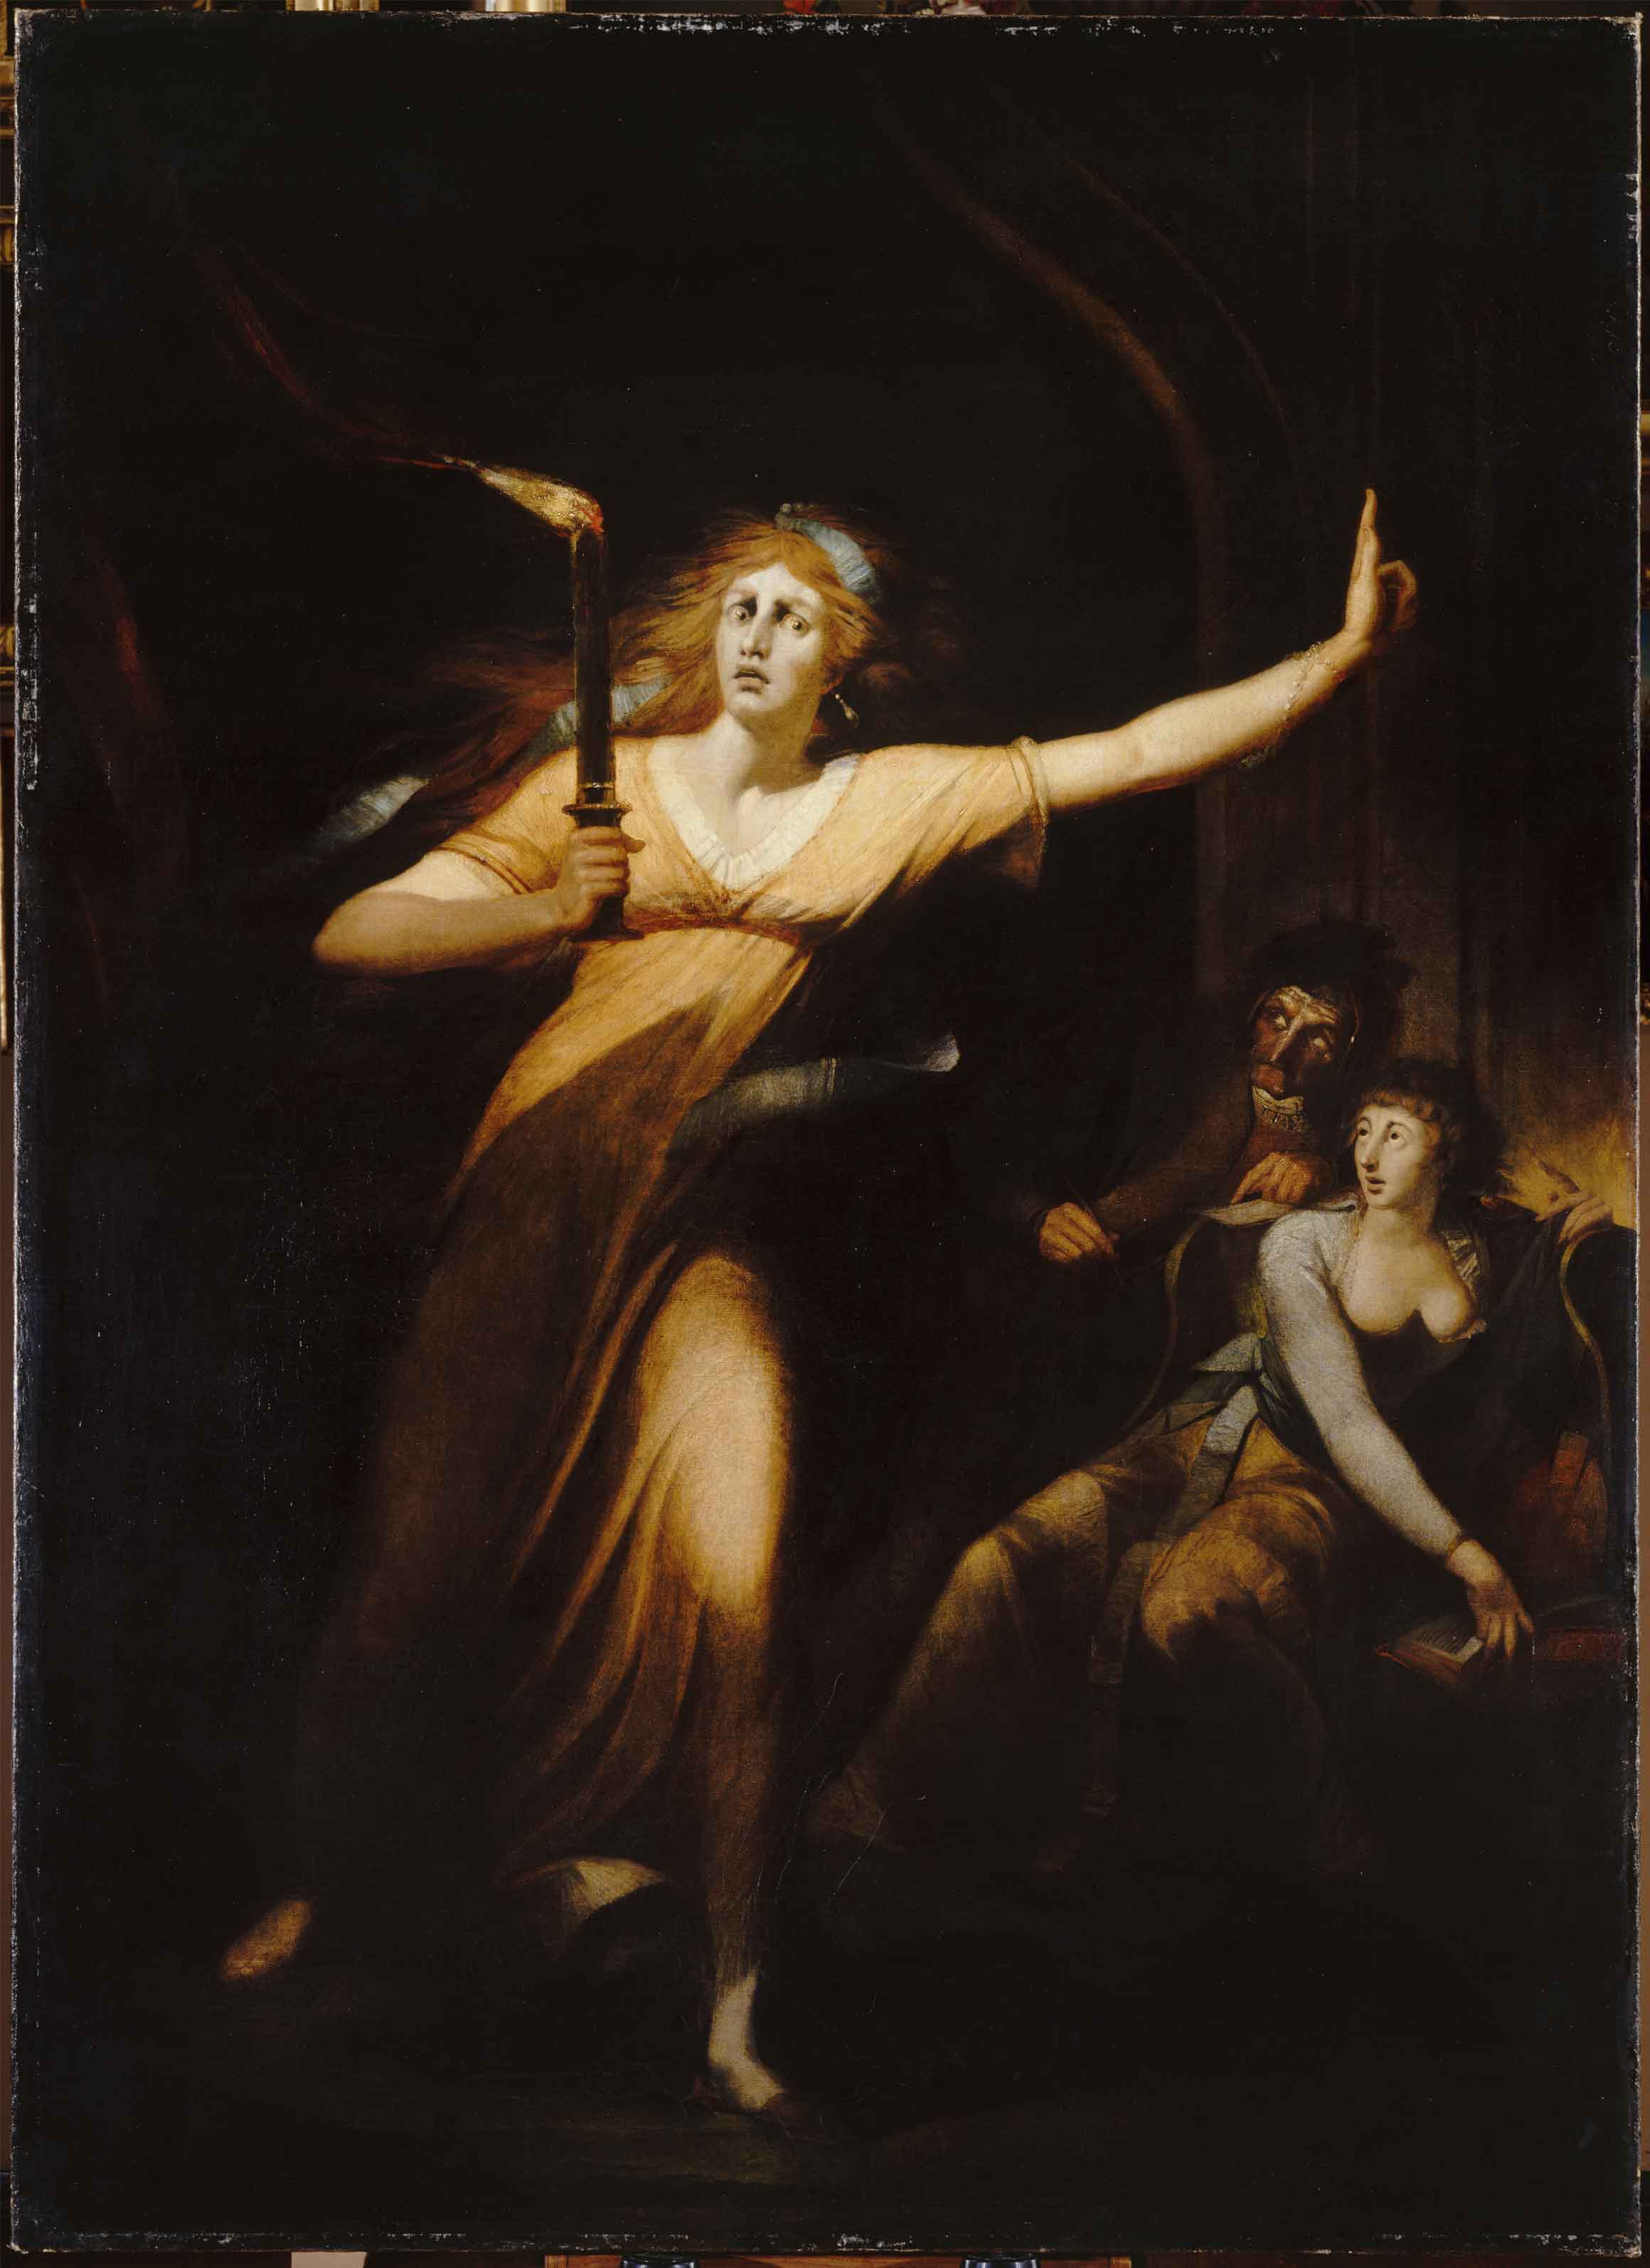 Johann Heinrich Füssli (1741 – 1825), Lady Macbeth somnambule, vers 1784, huile sur toile, 221 x 160 cm, © RMN-Grand Palais (musée du Louvre) / Hervé Lewandowski